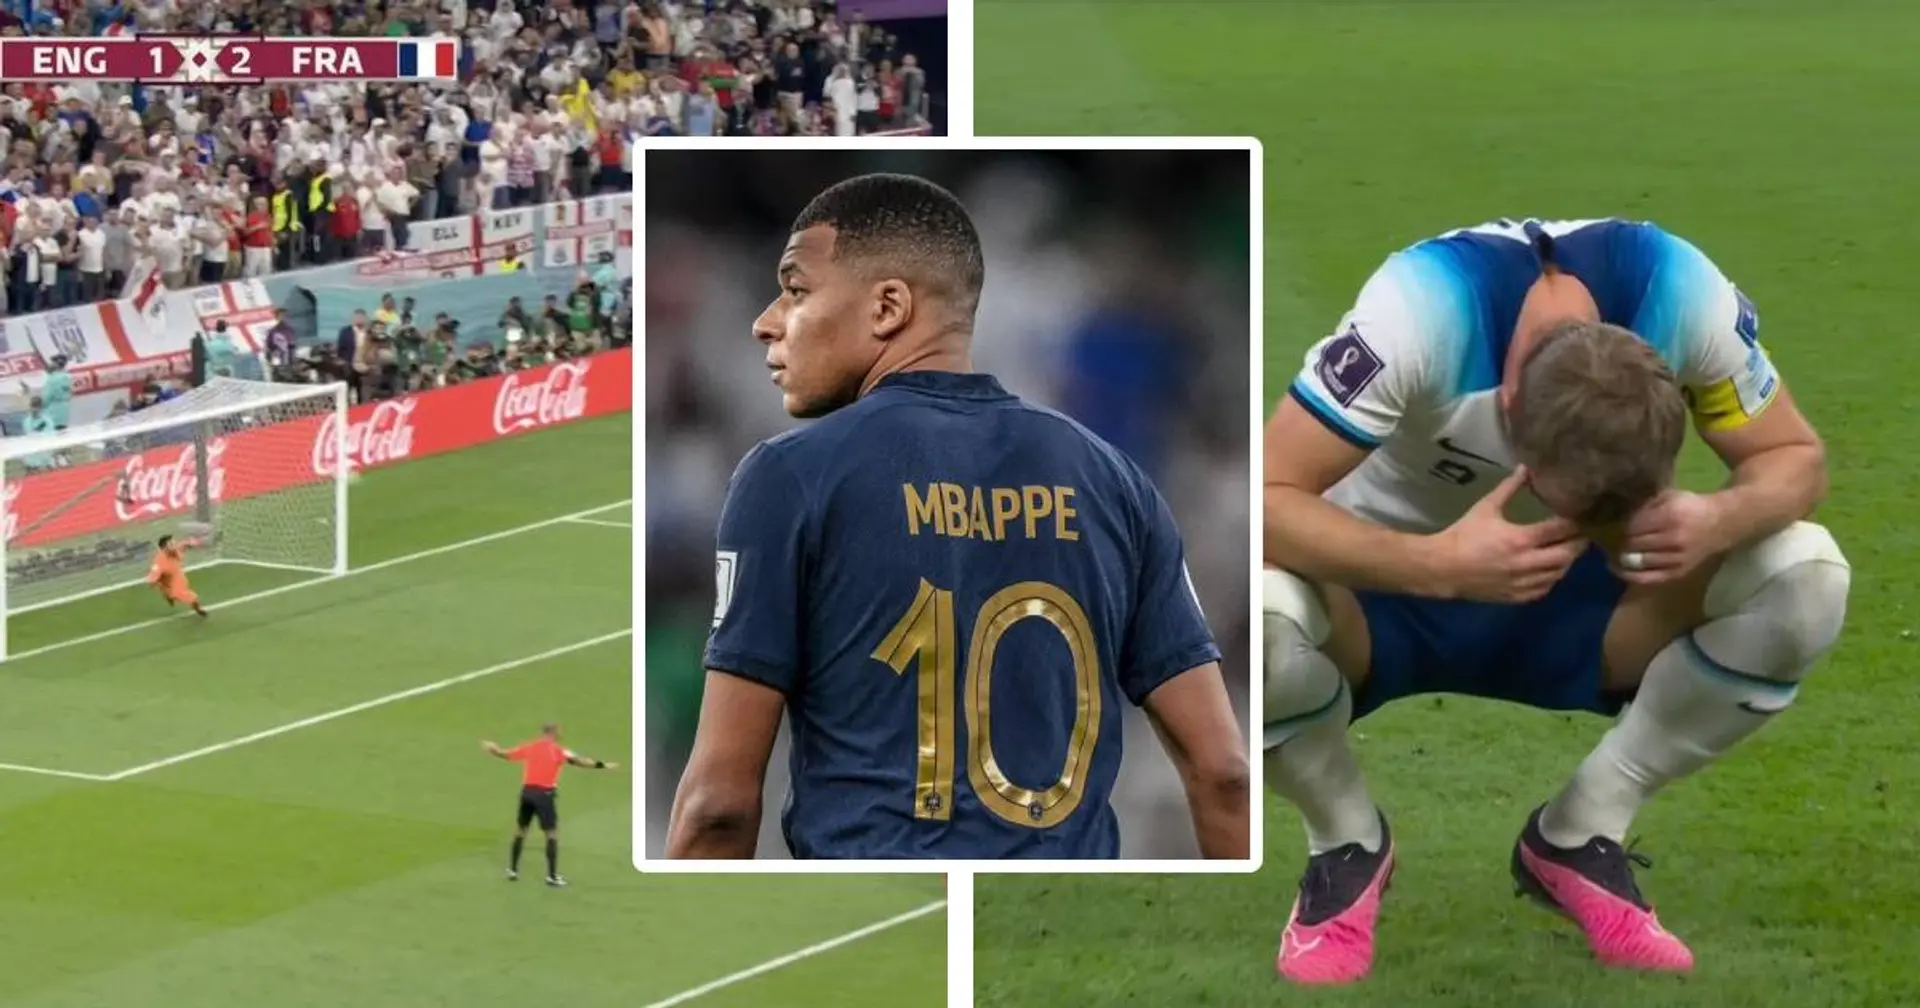 Aperçu : la réaction hilarante de Mbappé après l'énorme raté d'Harry Kane sur penalty qui qui élimine les anglais